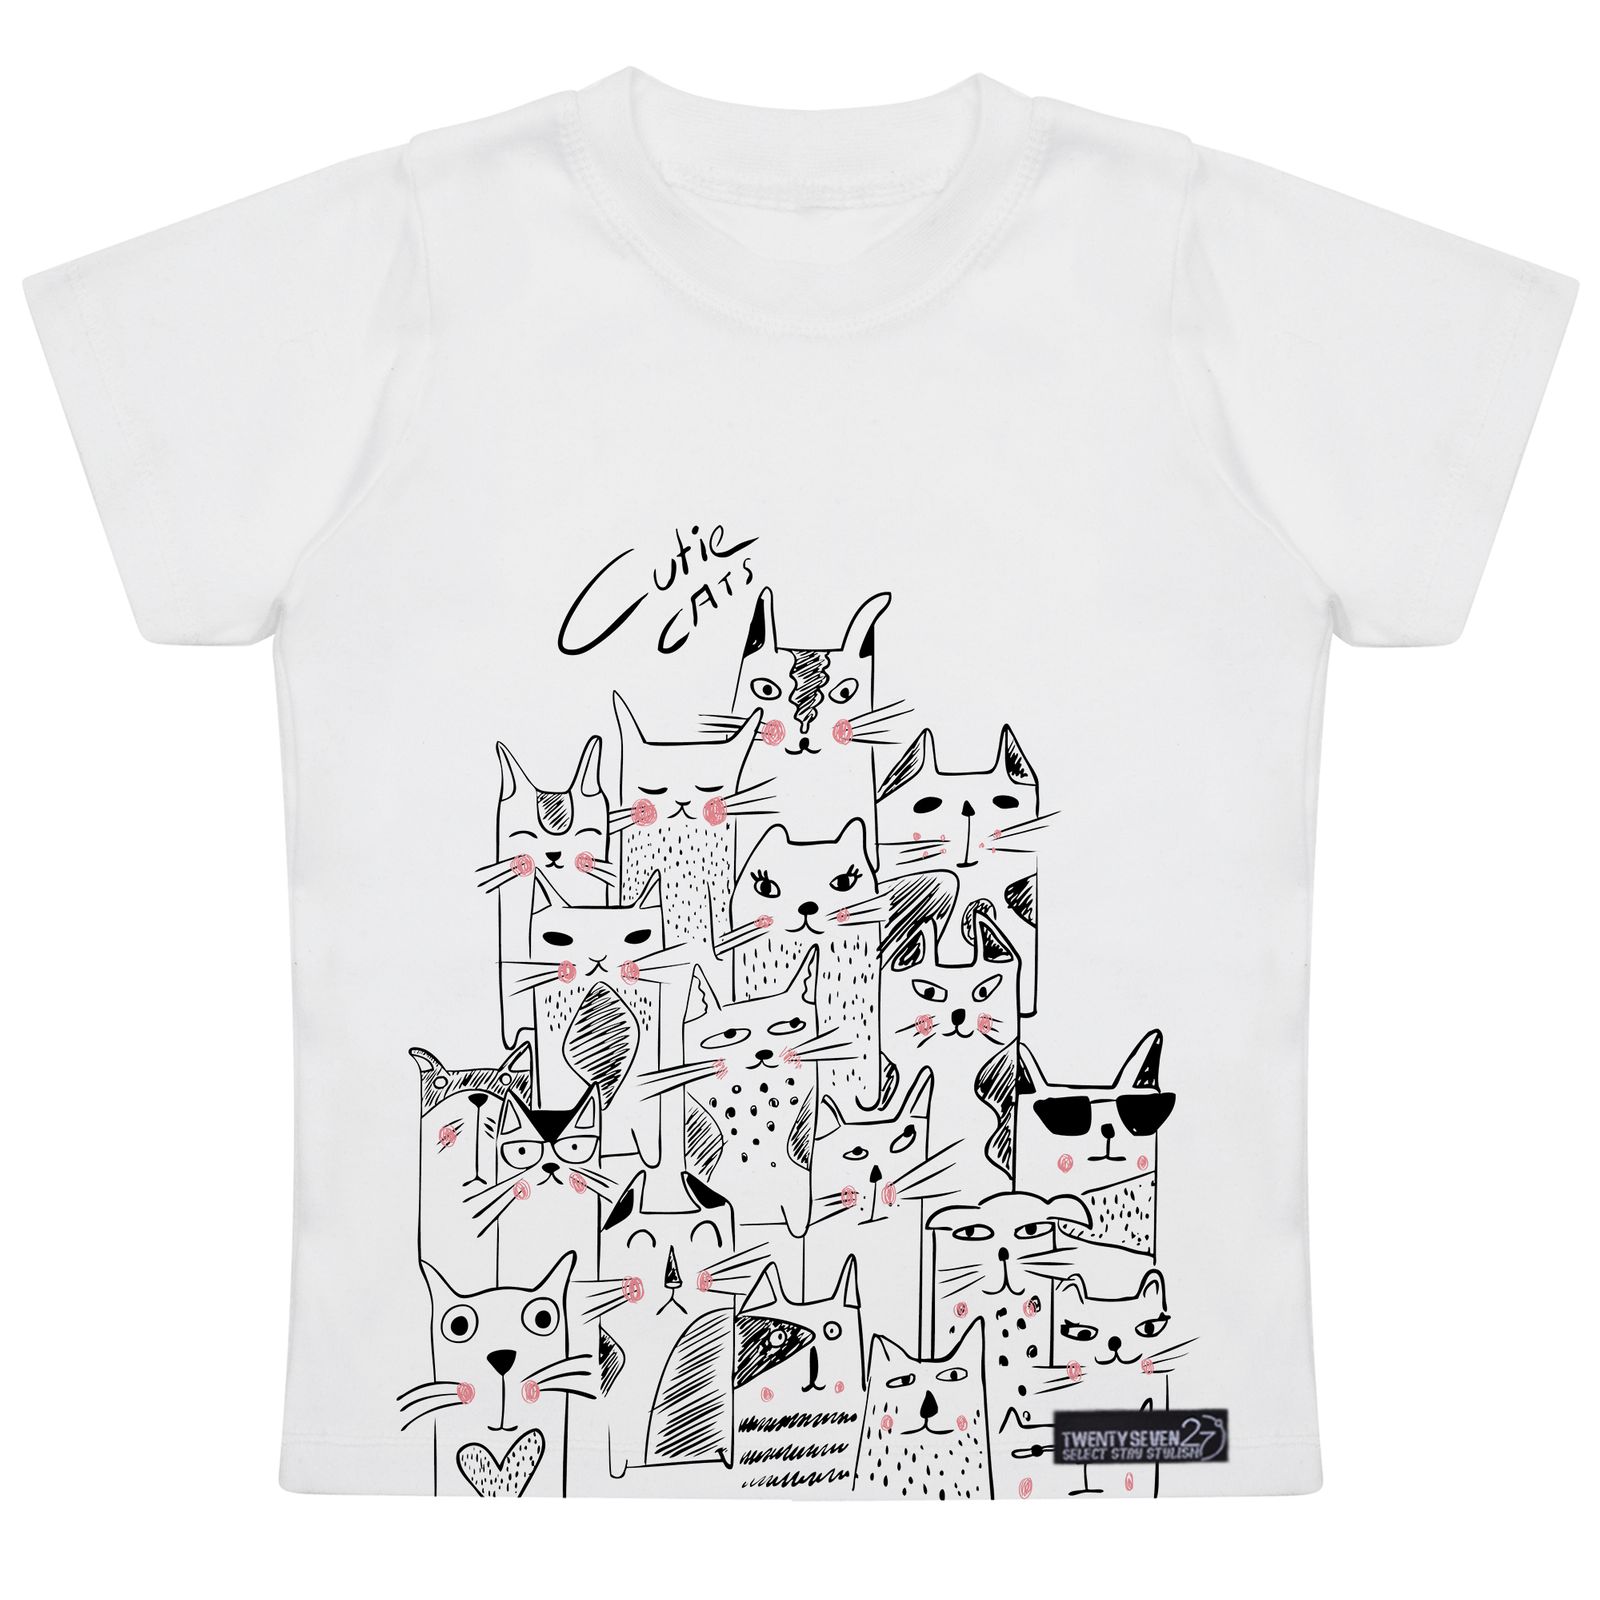 تی شرت آستین کوتاه دخترانه 27 مدل Cute Cats کد MH930 -  - 4